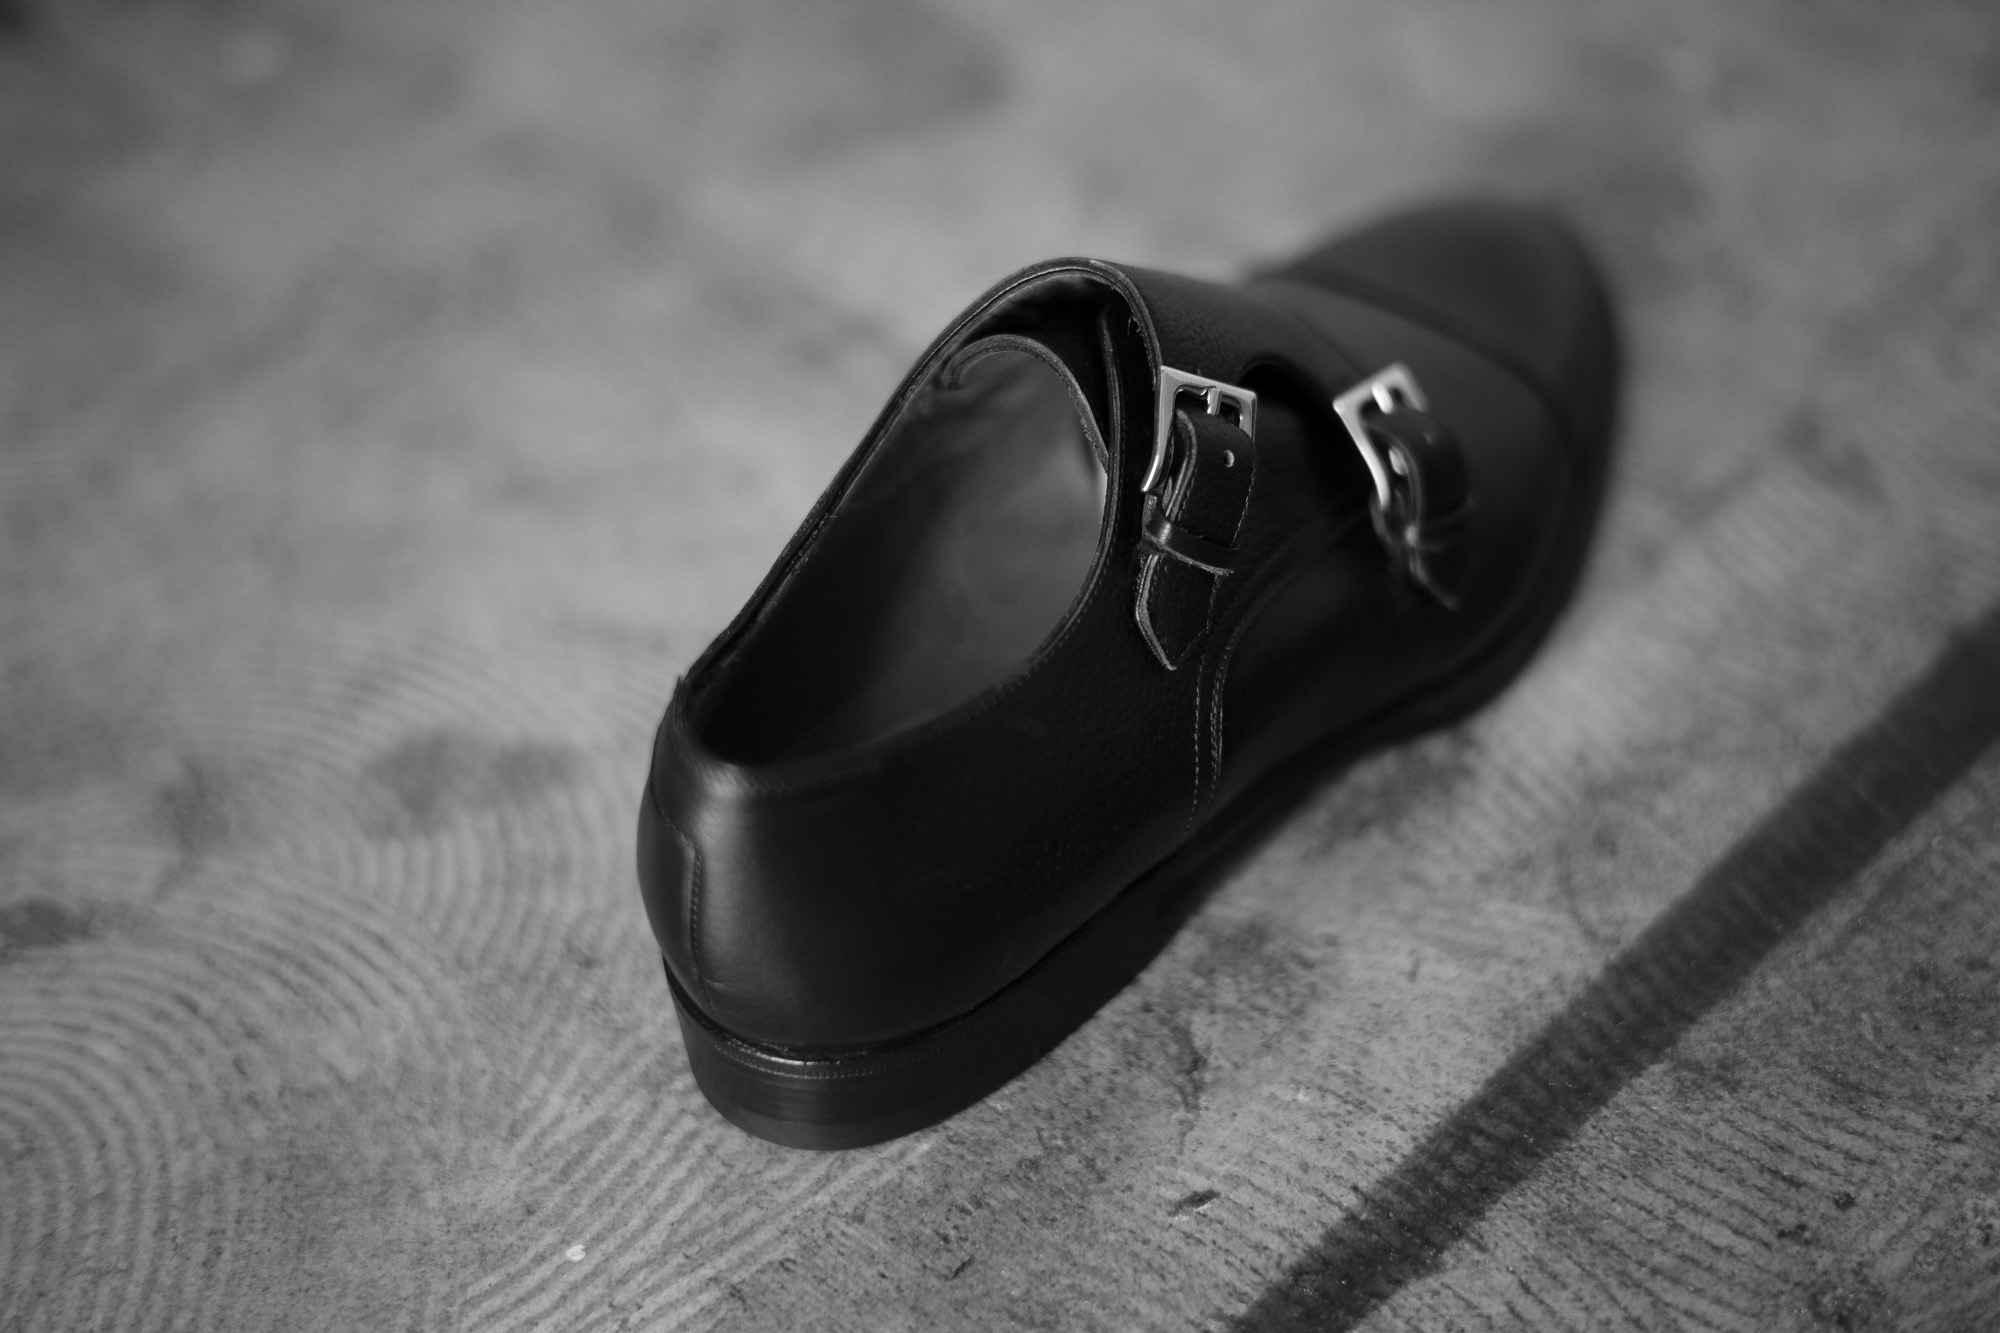 ENZO BONAFE(エンツォボナフェ) 【ART.EB-27】Double Monk Strap Shoes Horween Shell Cordovan leather ホーウィンシェルコードバン ダブルモンクストラップシューズ BOURBON(バーボン) made in italy(イタリア製) 2018 春夏 enzobonafe エンツォボナフェ doublemonk ダブルモンク レアカラー コードヴァン バーボン bourbon 愛知 名古屋 Alto e Diritto アルト エ デリット